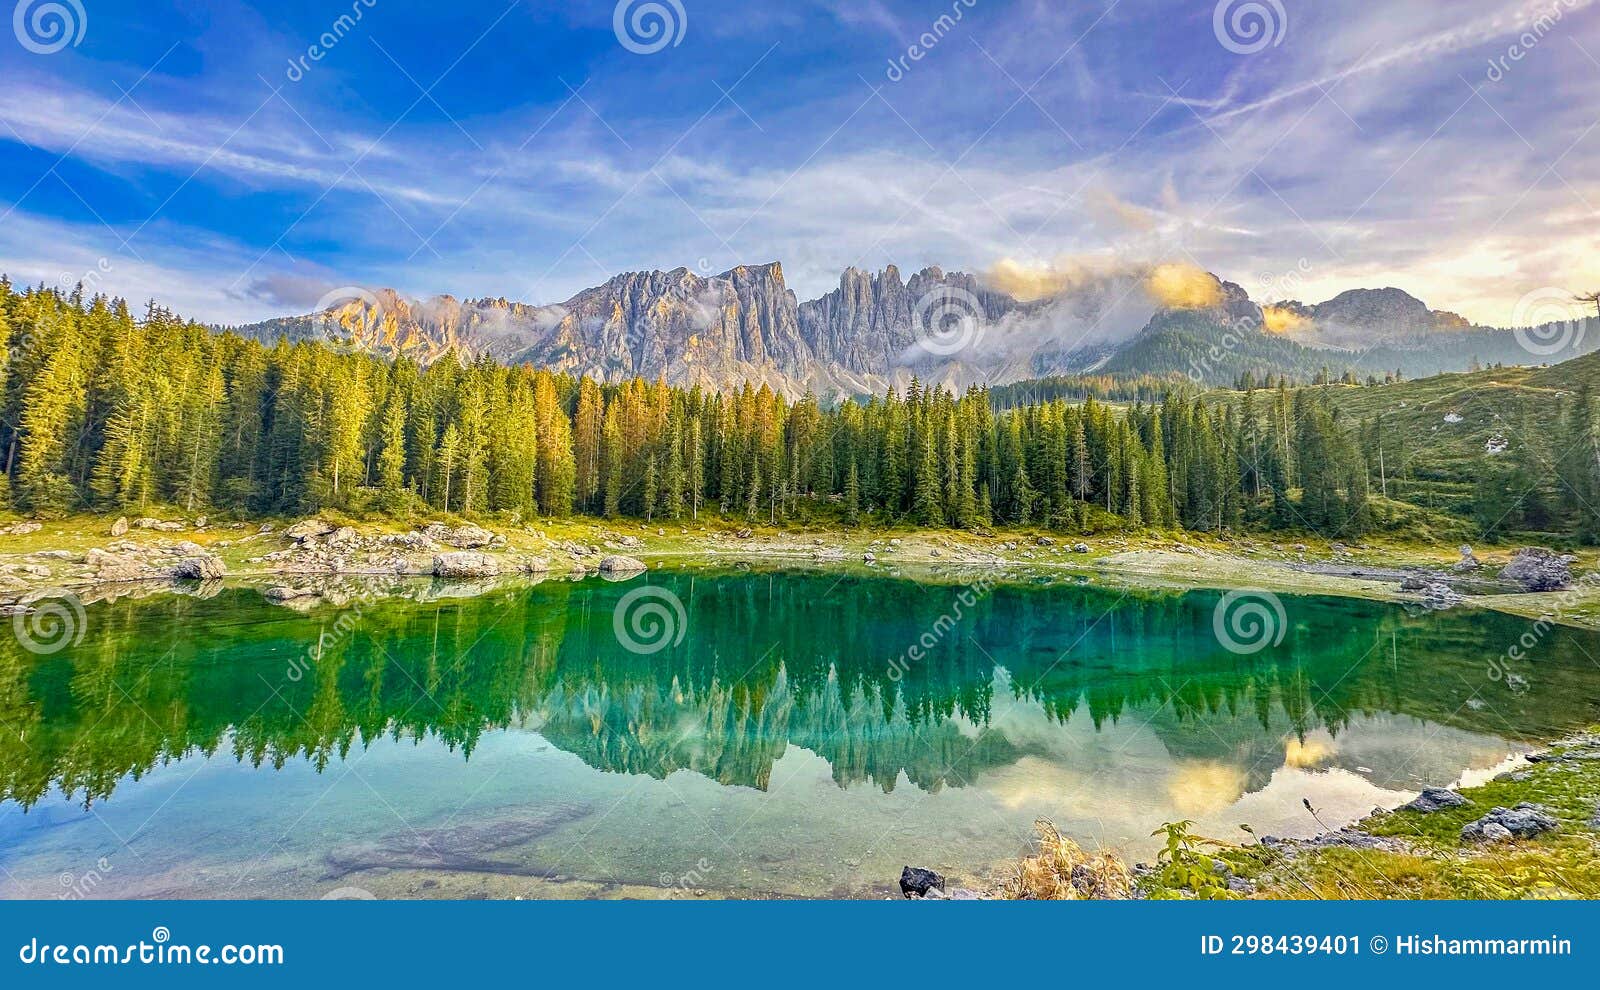 lago di carezza,perched at 1,519m, an alpine treasure with emerald waters